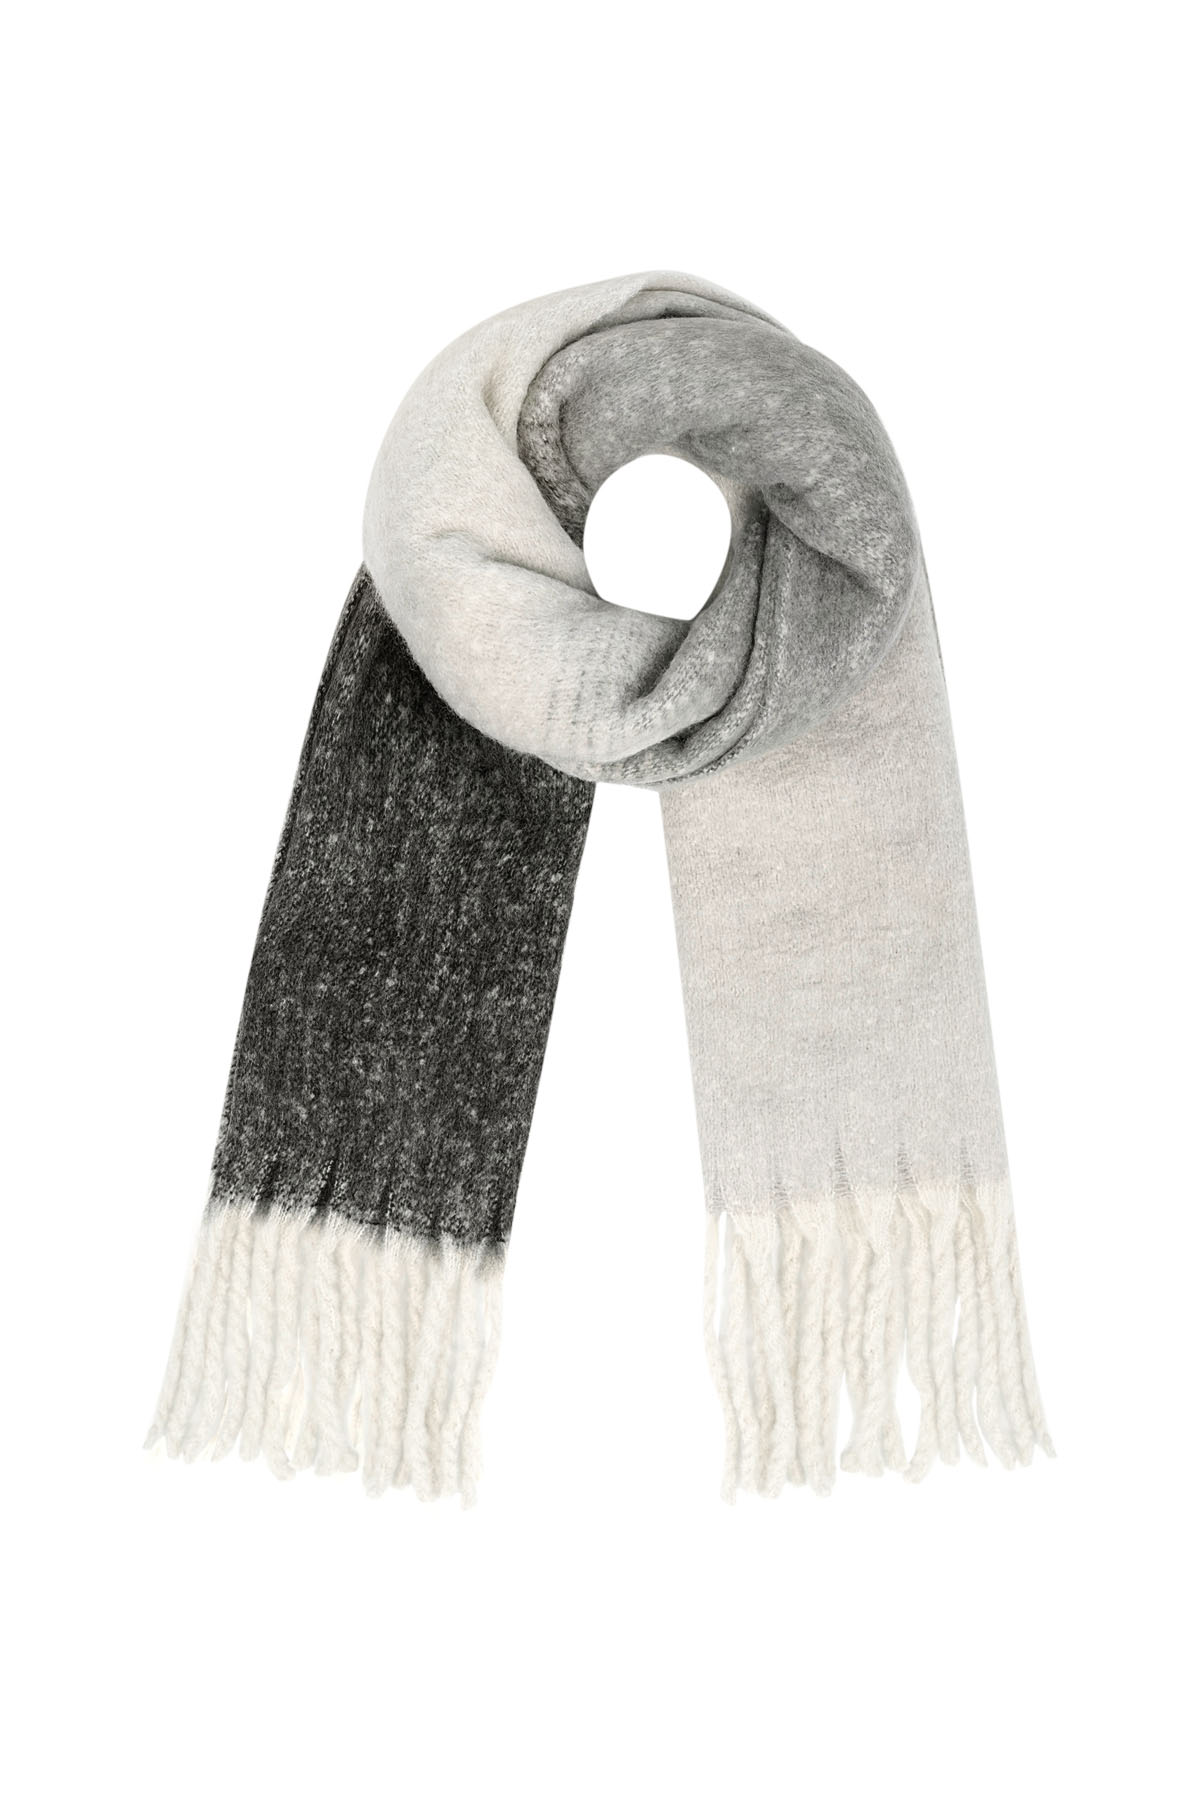 Gekleurde basic sjaal met slierten - zwart wit 